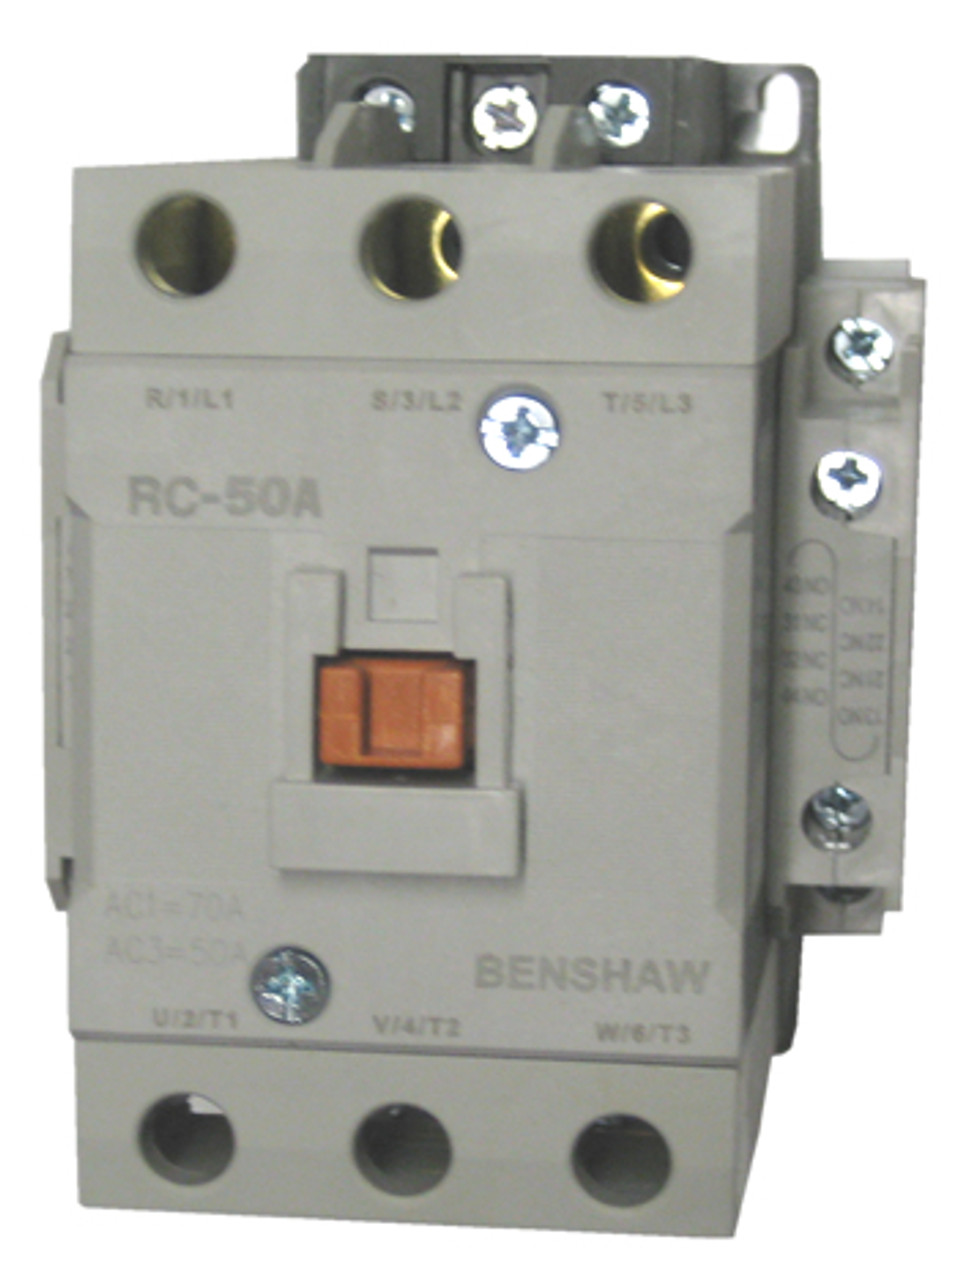 Benshaw RC-50A contactor